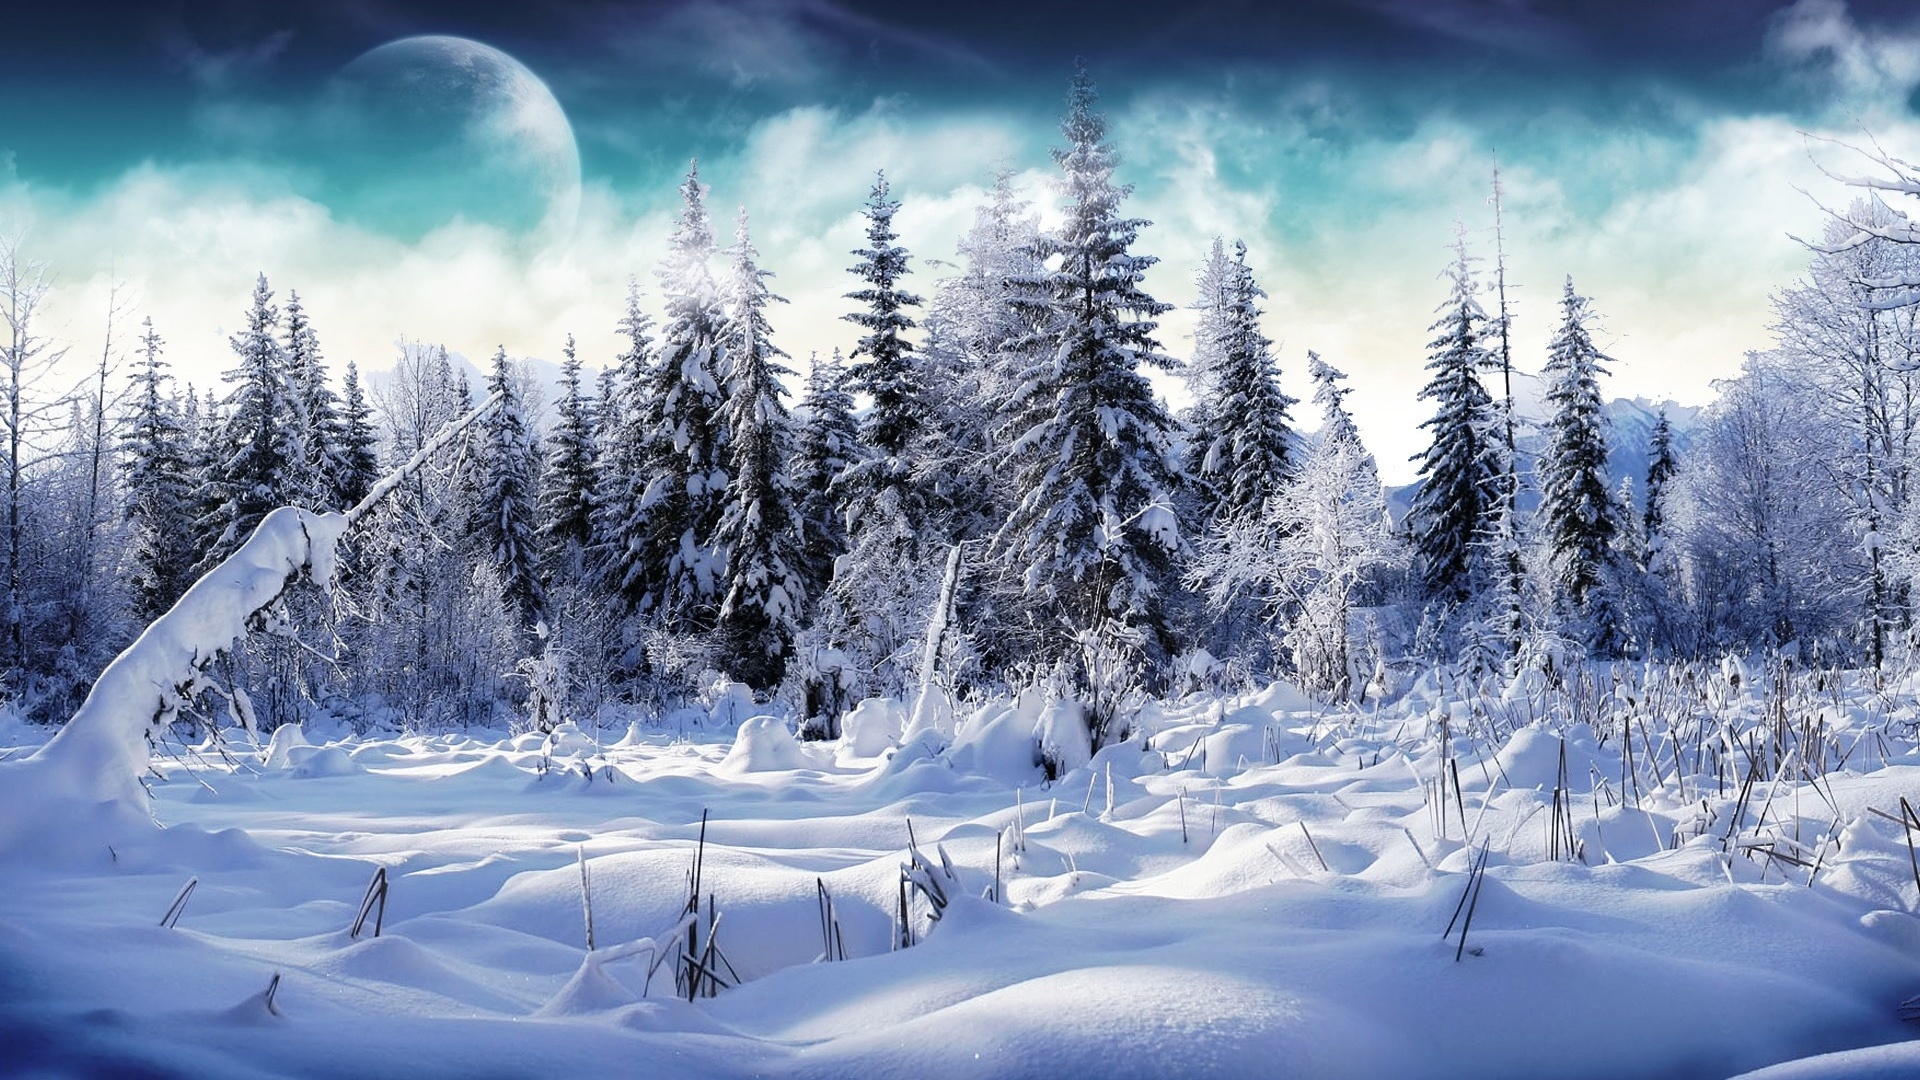 Trees full of snow for 1920 x 1080 HDTV 1080p resolution